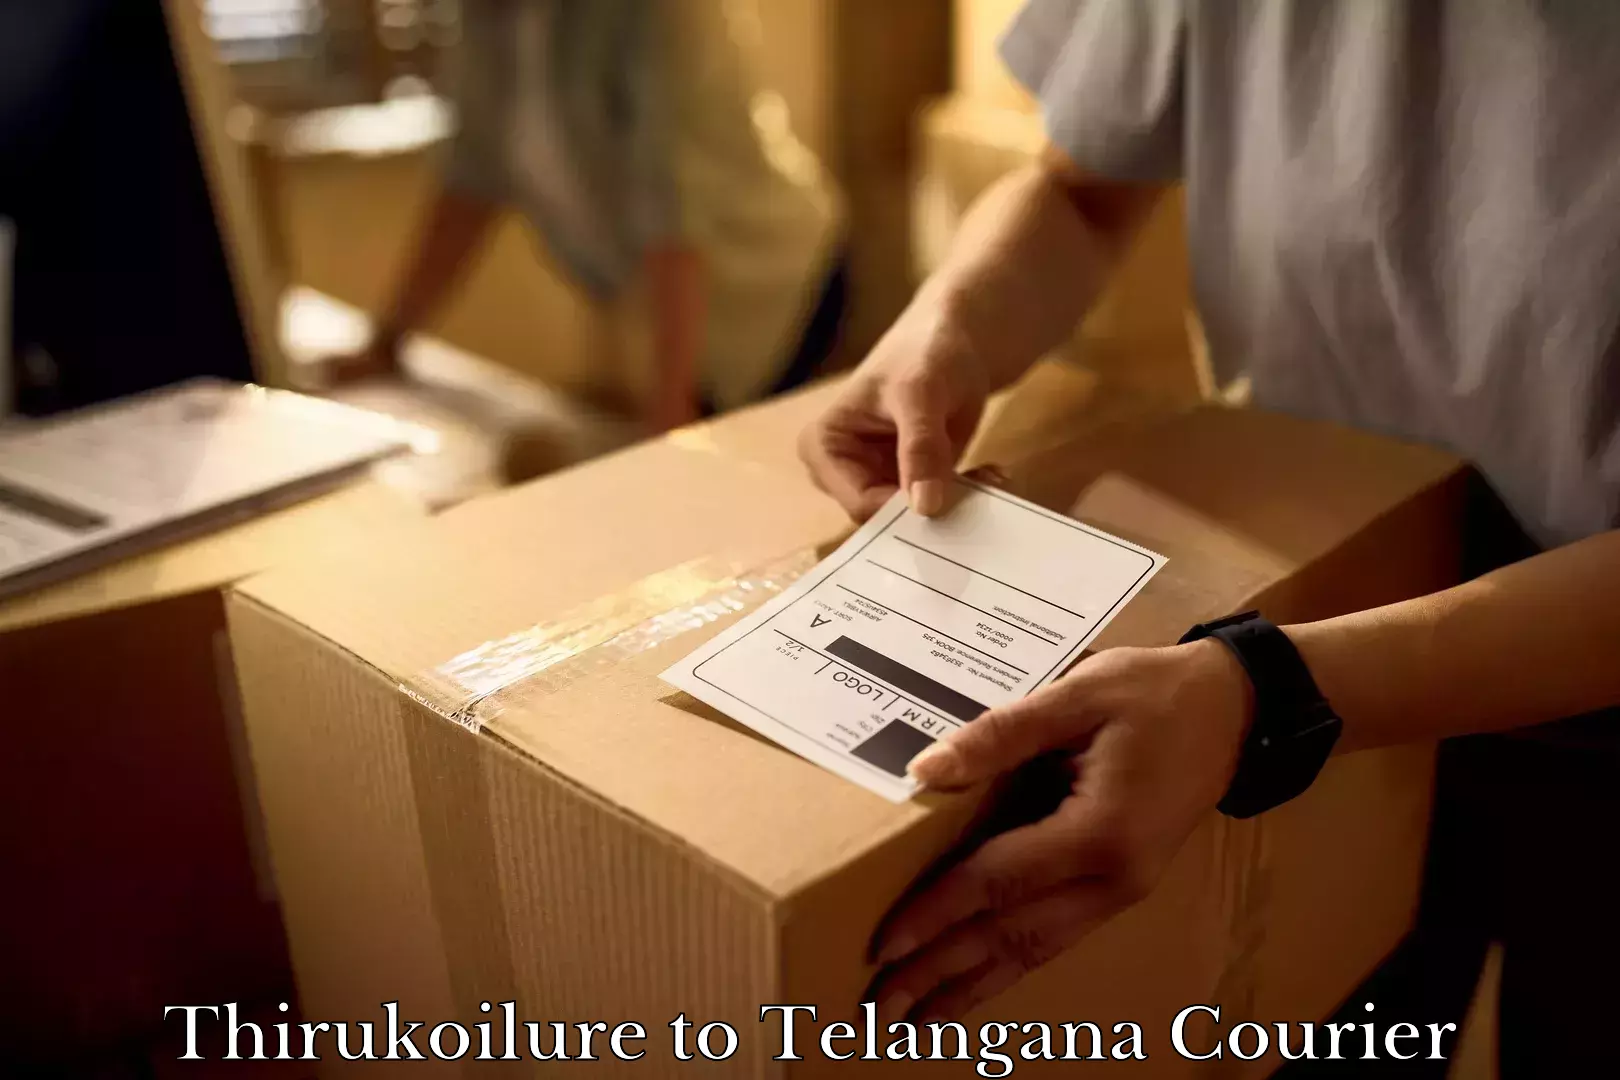 Home relocation and storage Thirukoilure to Telangana